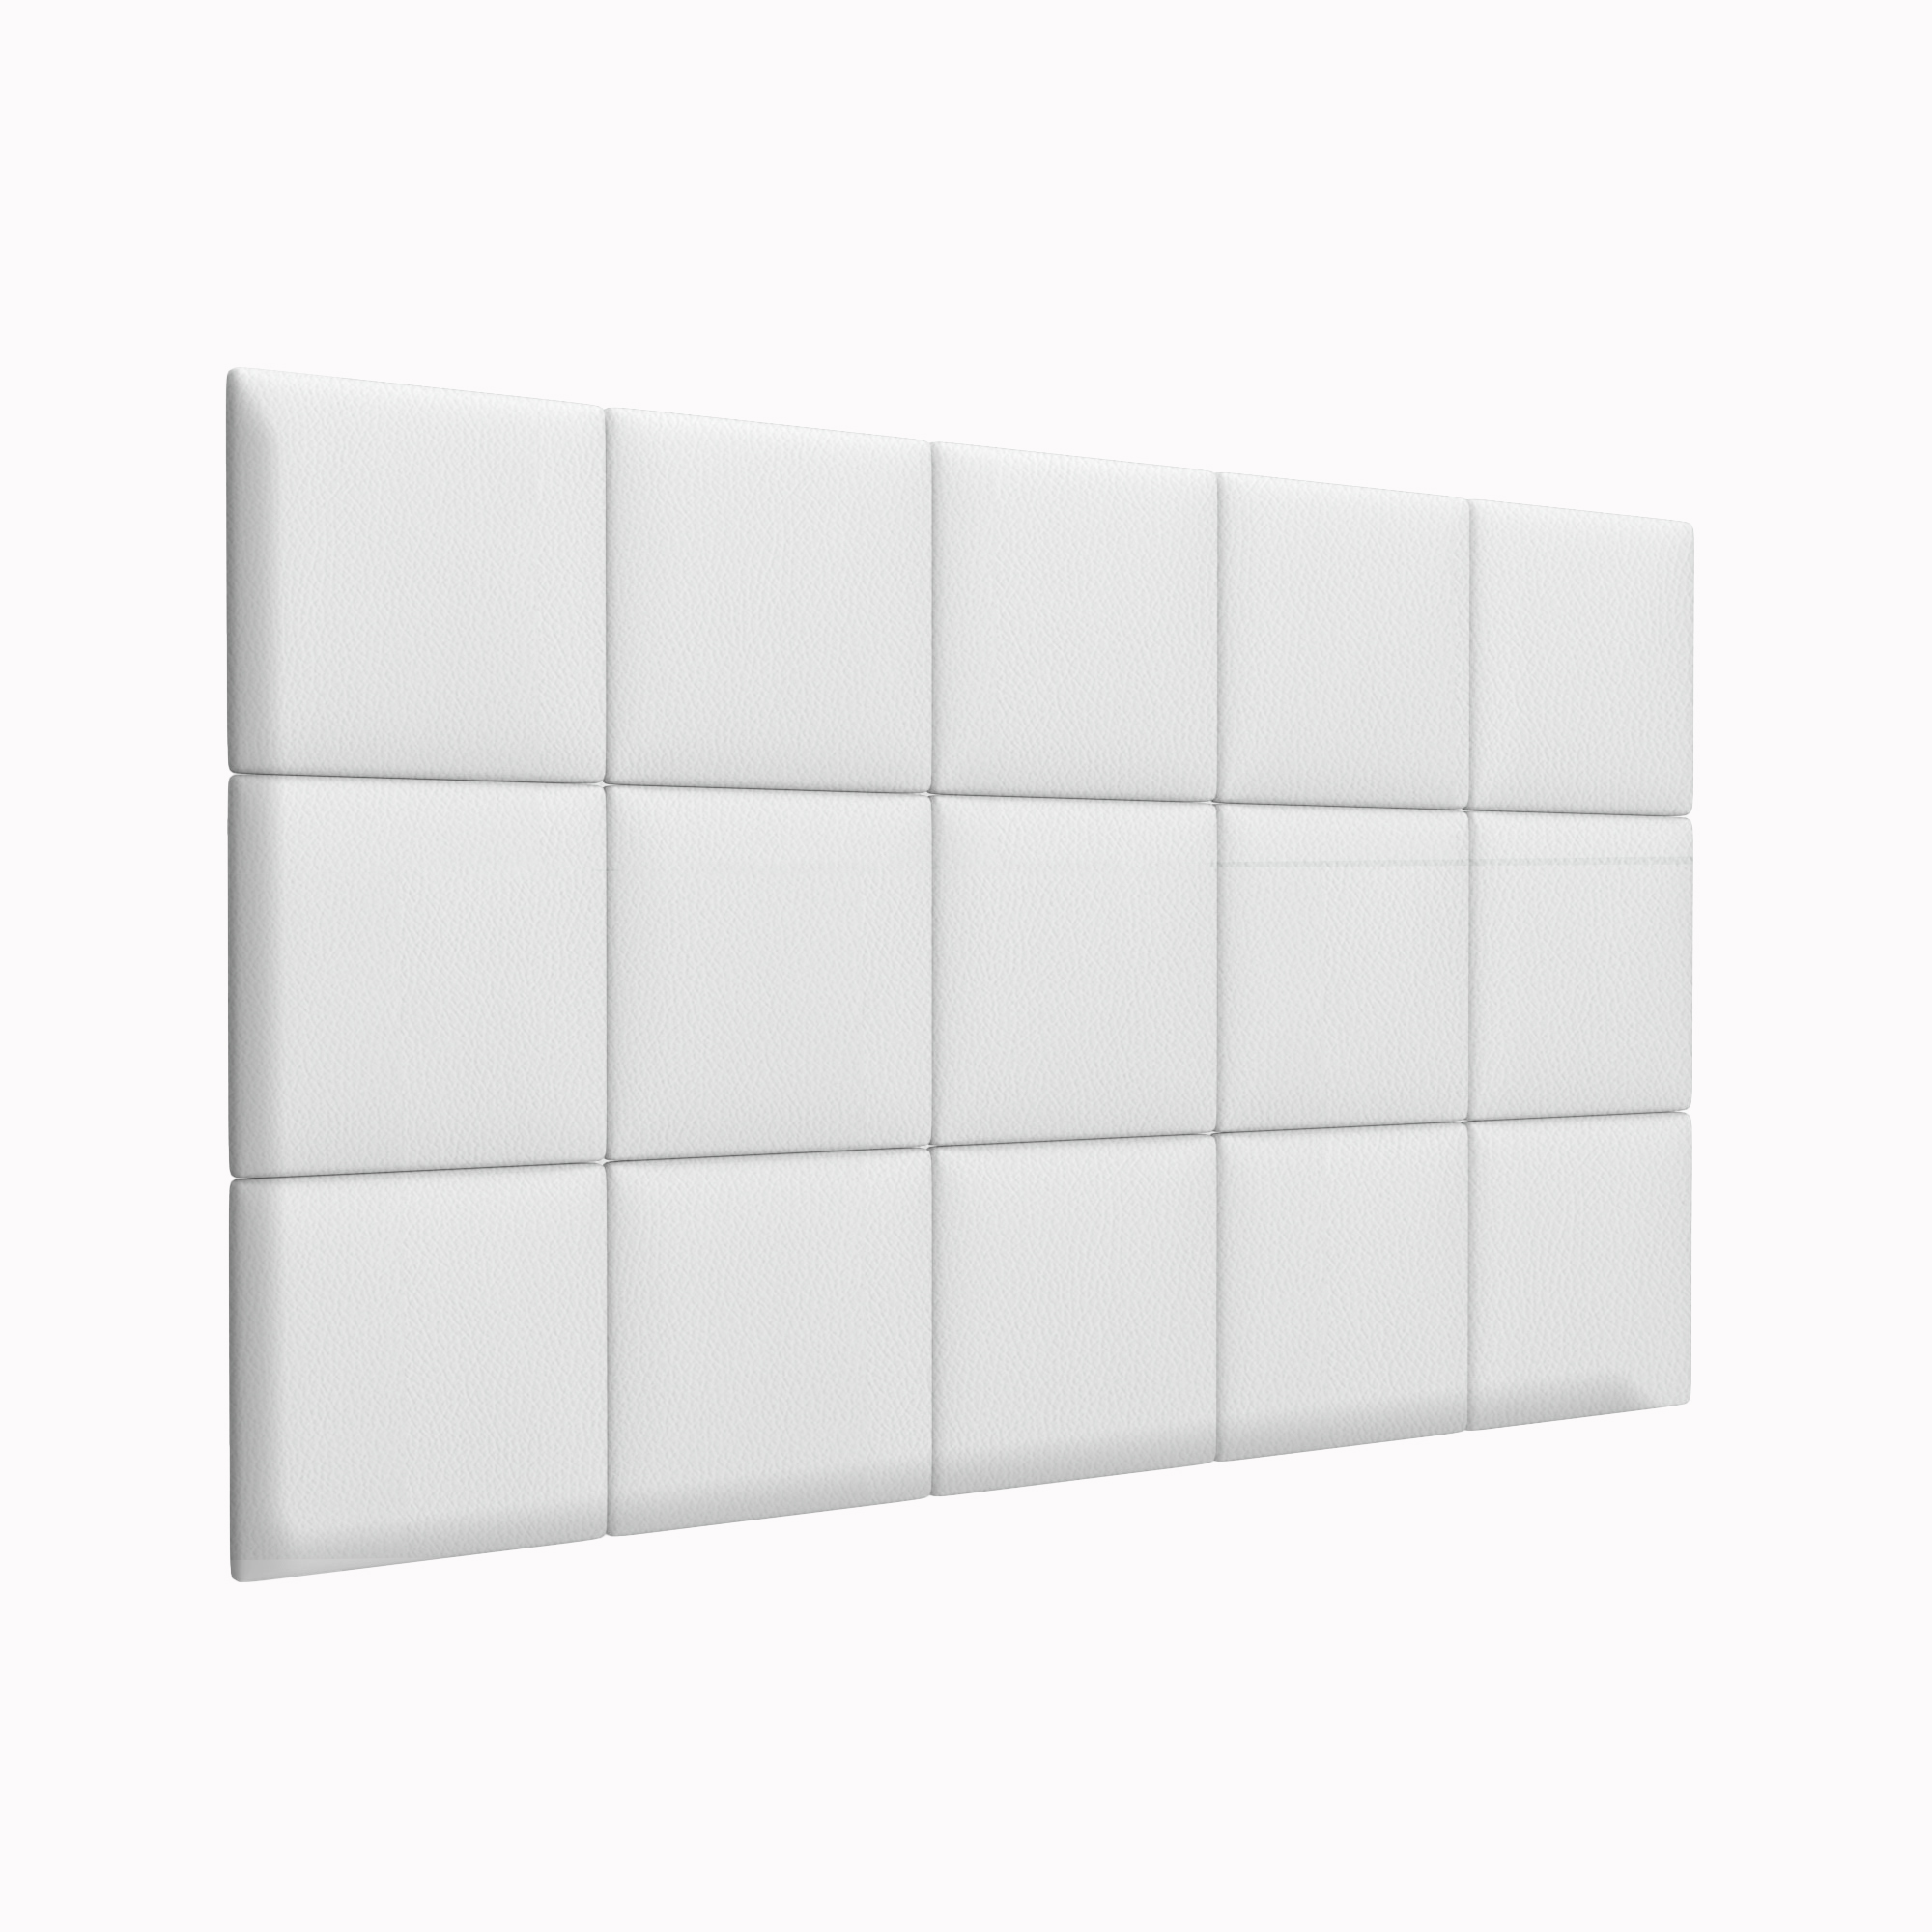 Мягкие стеновые панели Eco Leather White 30х30 см 2 шт декор ascot ceramiche glamourwall gmcx10 calacatta mix сд154рк 30х30 см